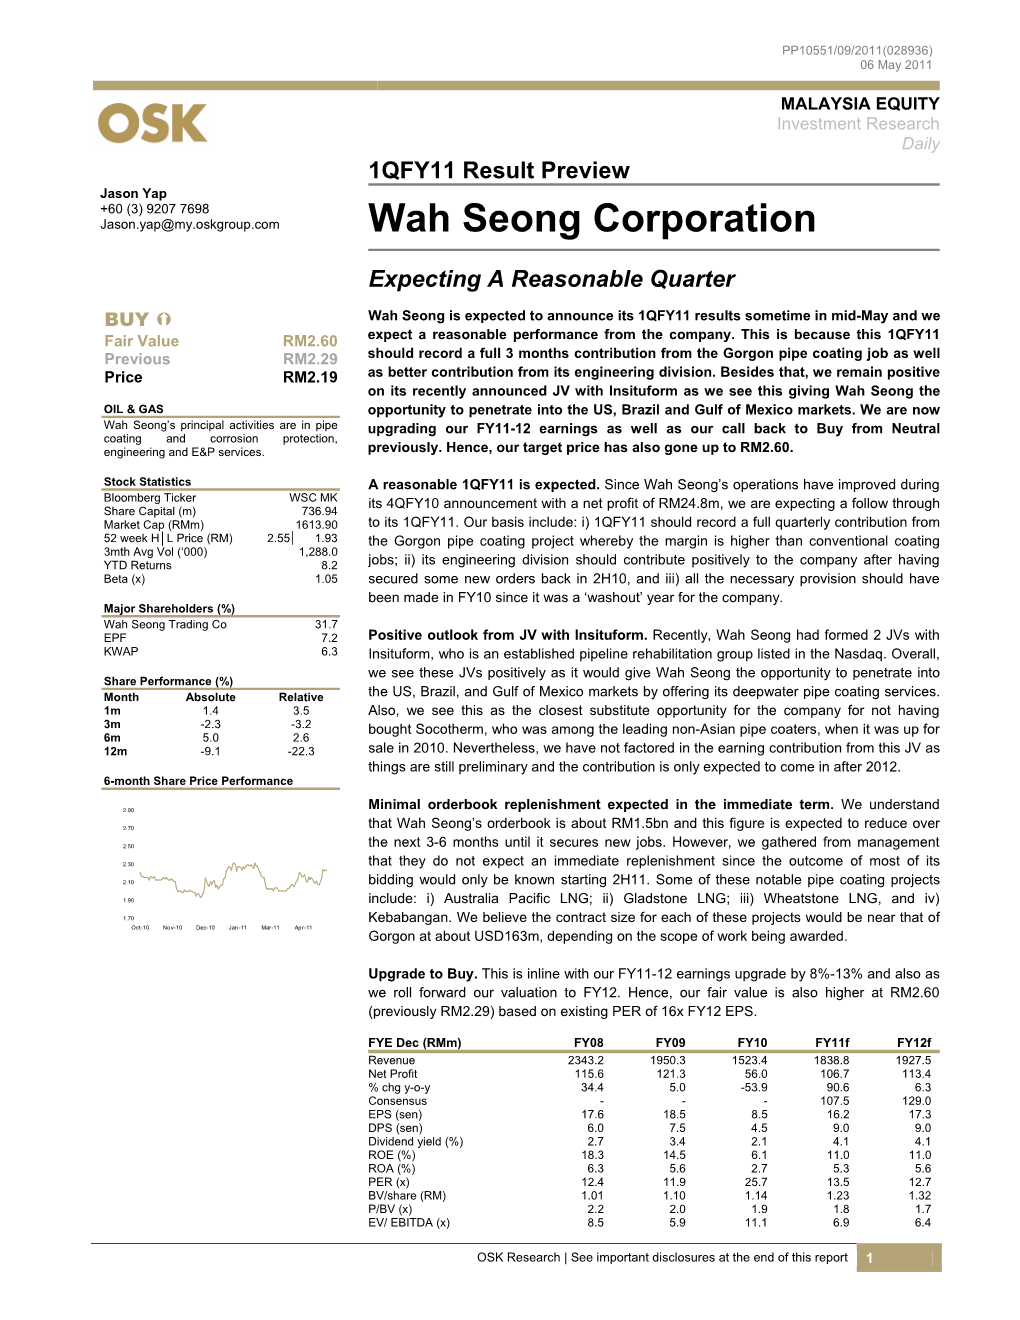 Wah Seong Corporation